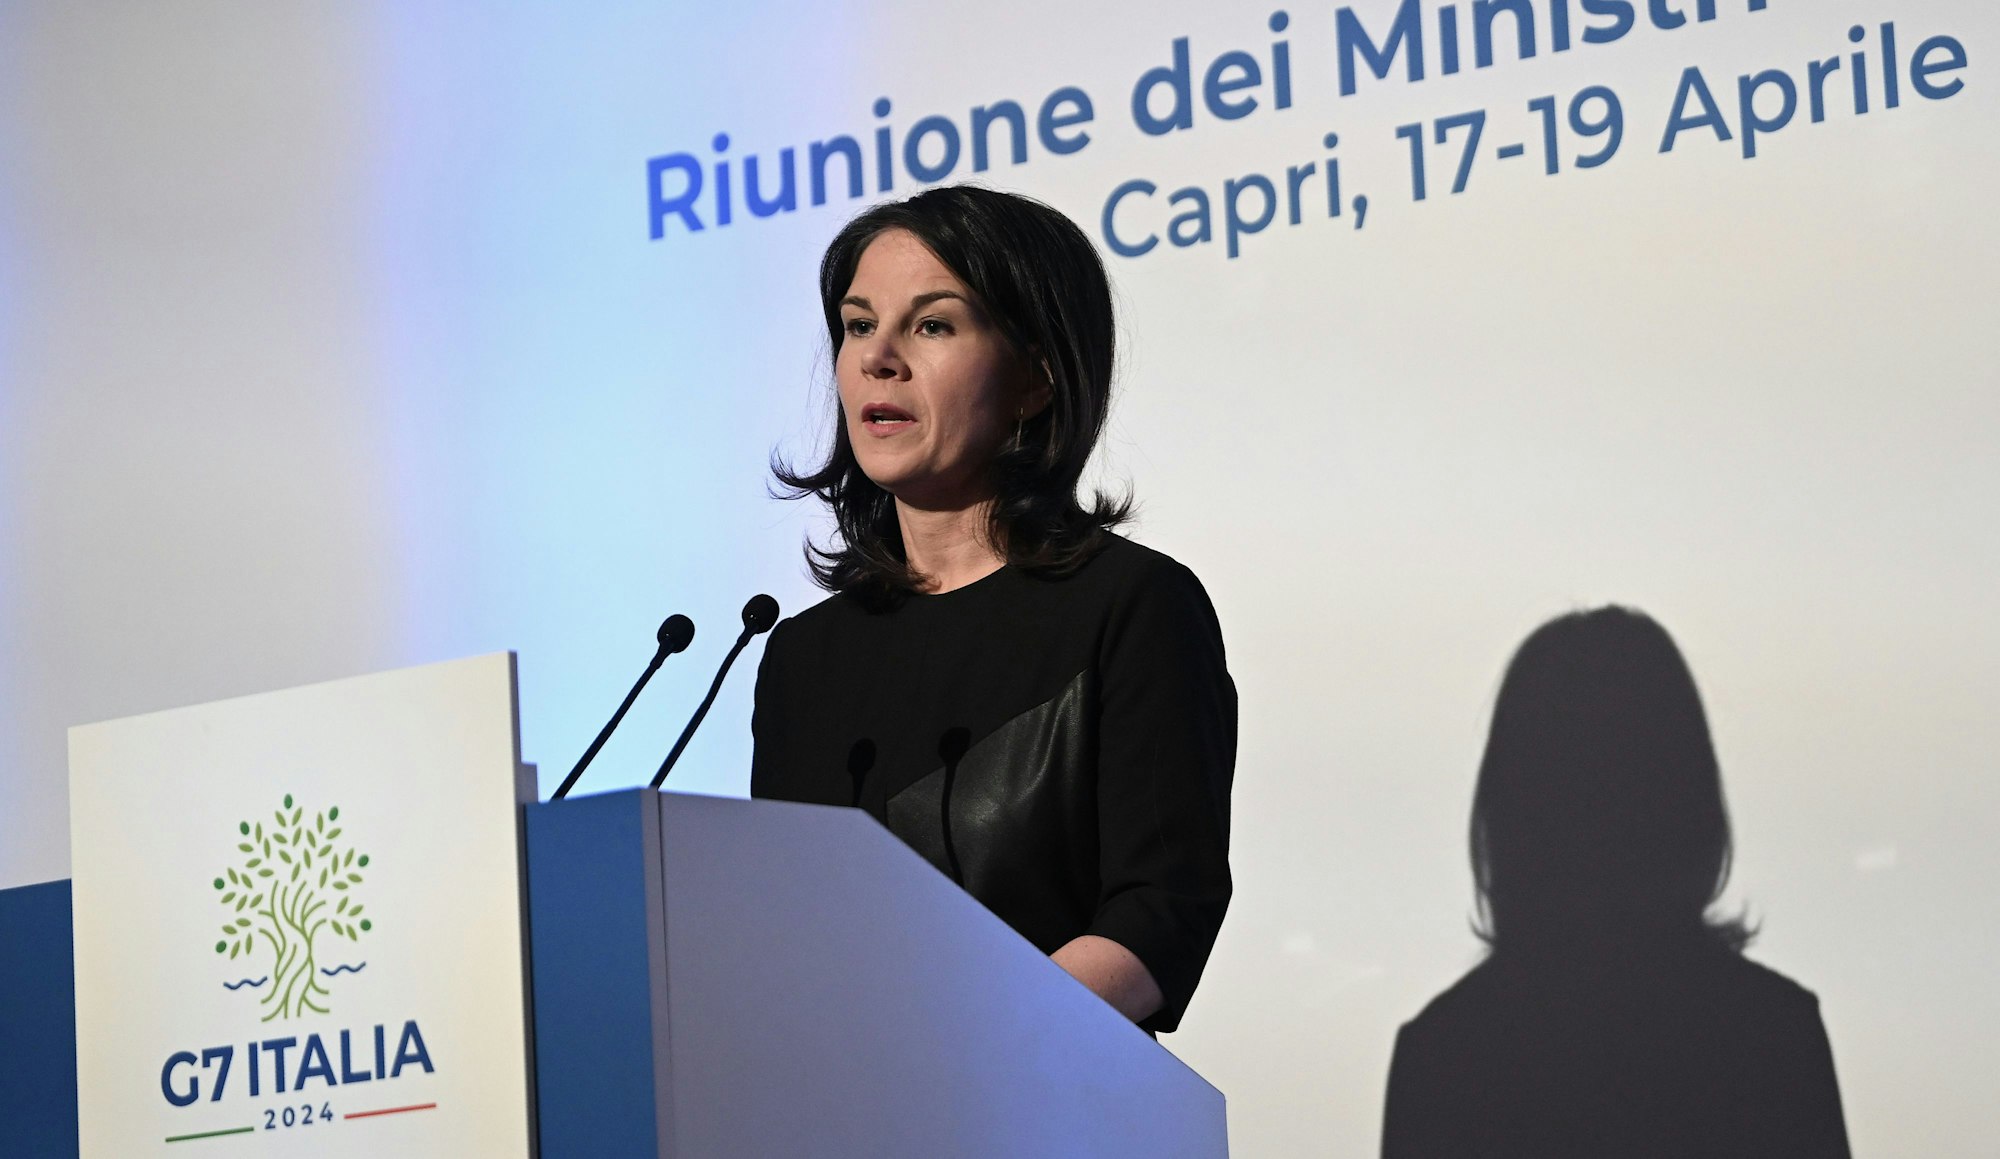 Capri: Annalena Baerbock (Bündnis 90/Die Grünen), Bundesministerin des Auswärtigen, spricht in zwei Mikrofone. Sie wird angeleuchtet und wirft einen Schatten auf einen weißen Hintergrund.